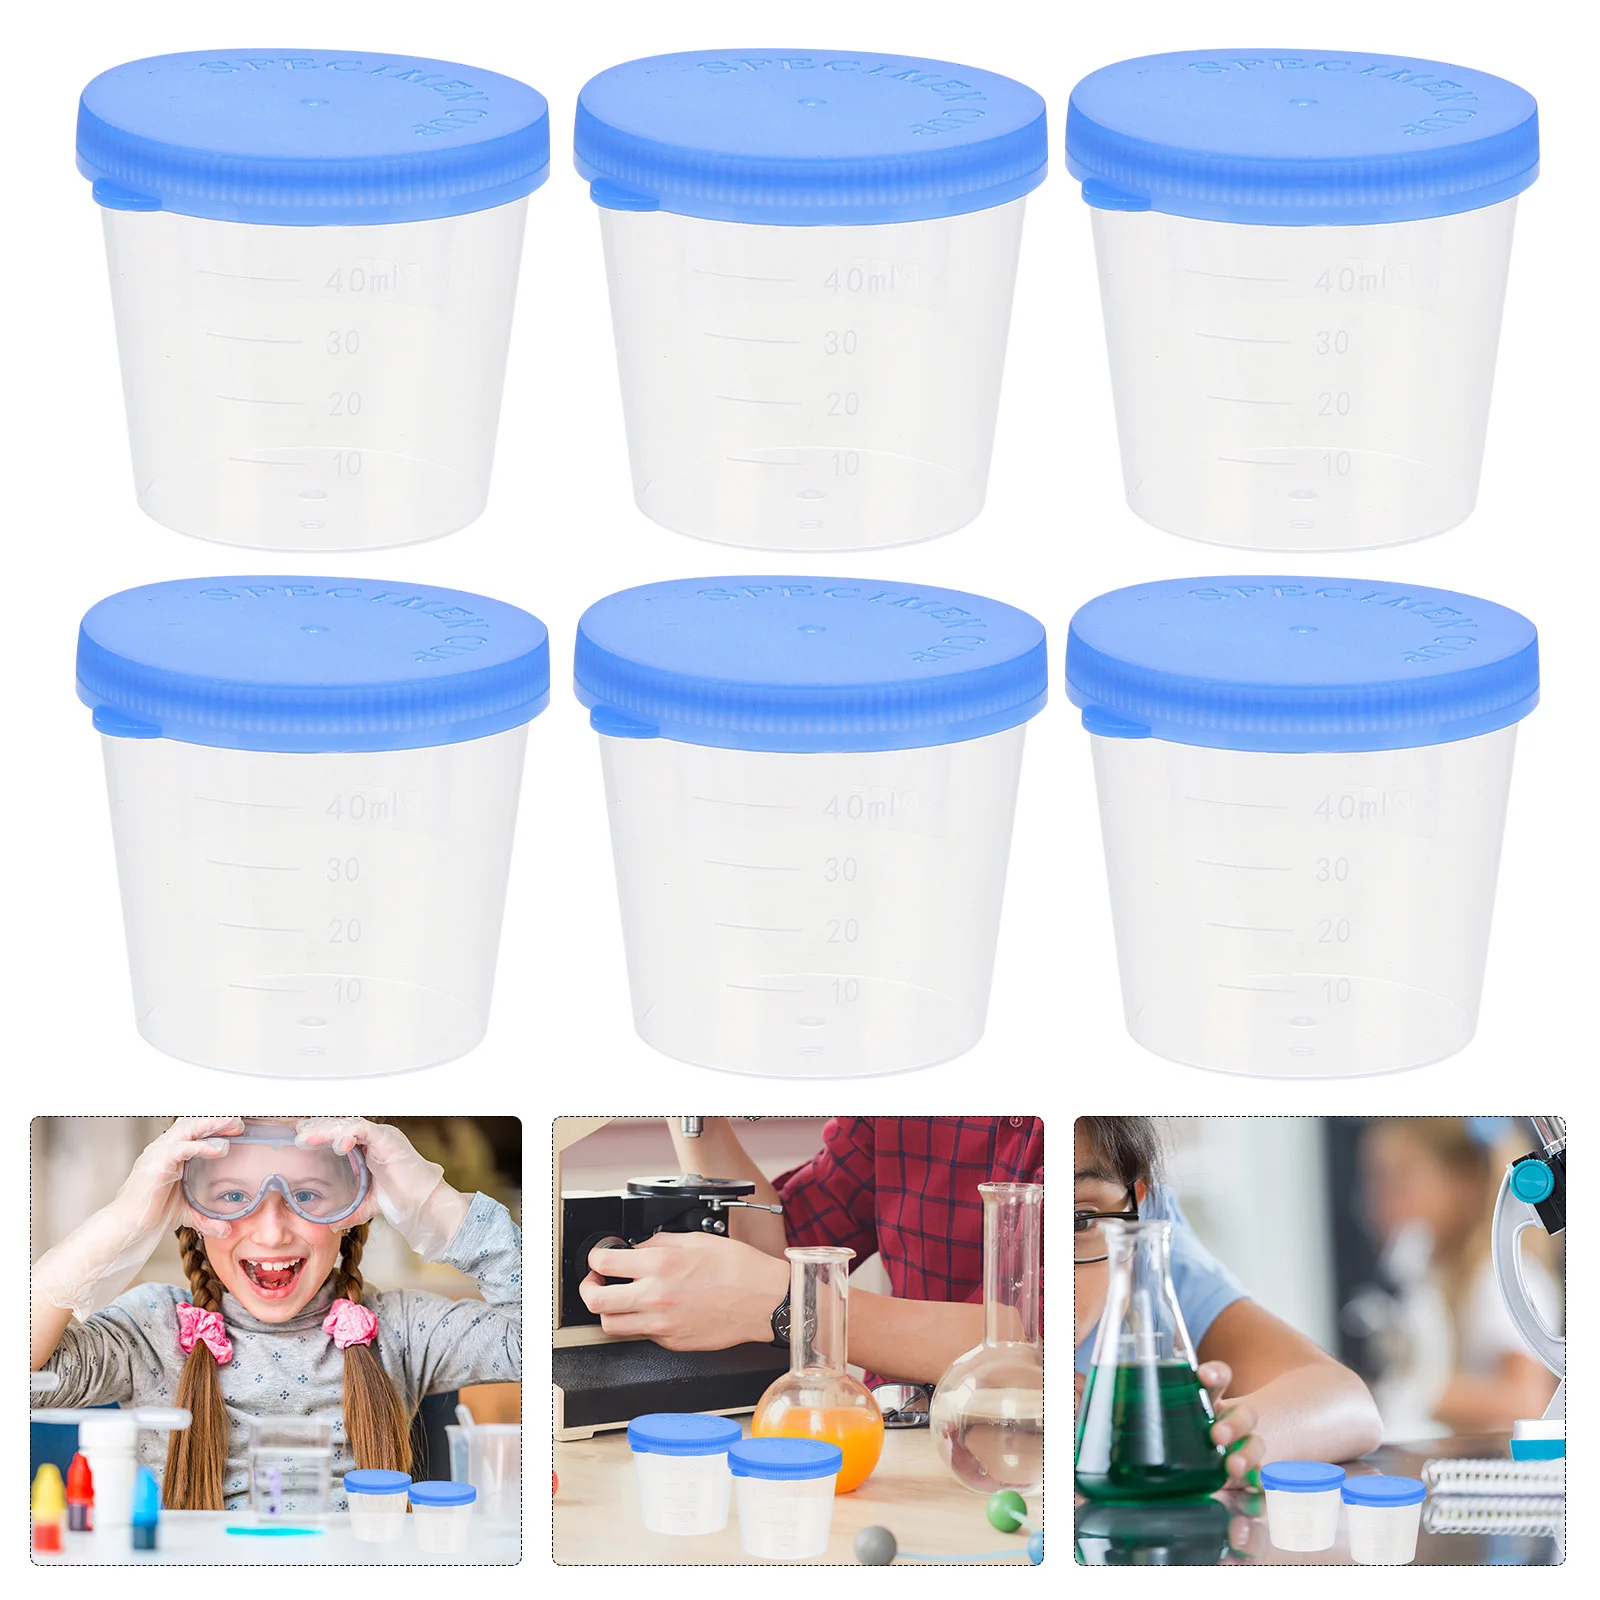 

50 шт. стаканчик для образцов, мужские одноразовые мерные чашки, стерильные пластиковые контейнеры для образцов с крышками